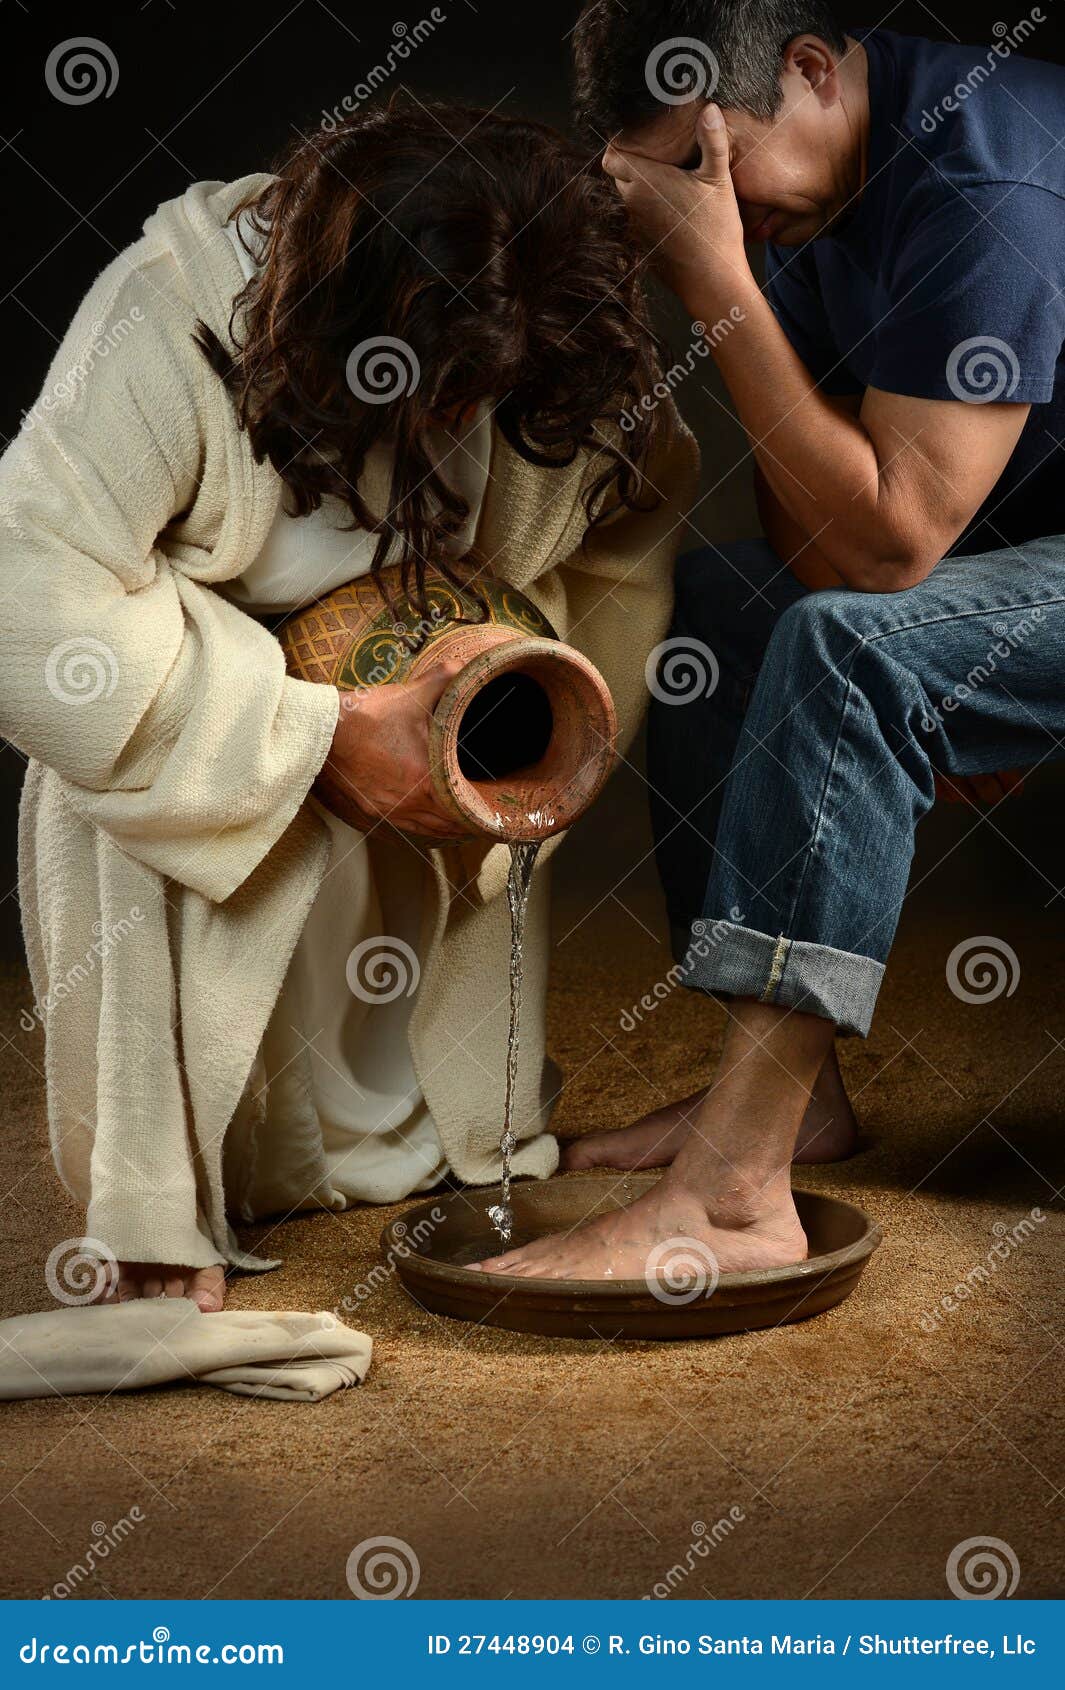 jesus washing feet of man